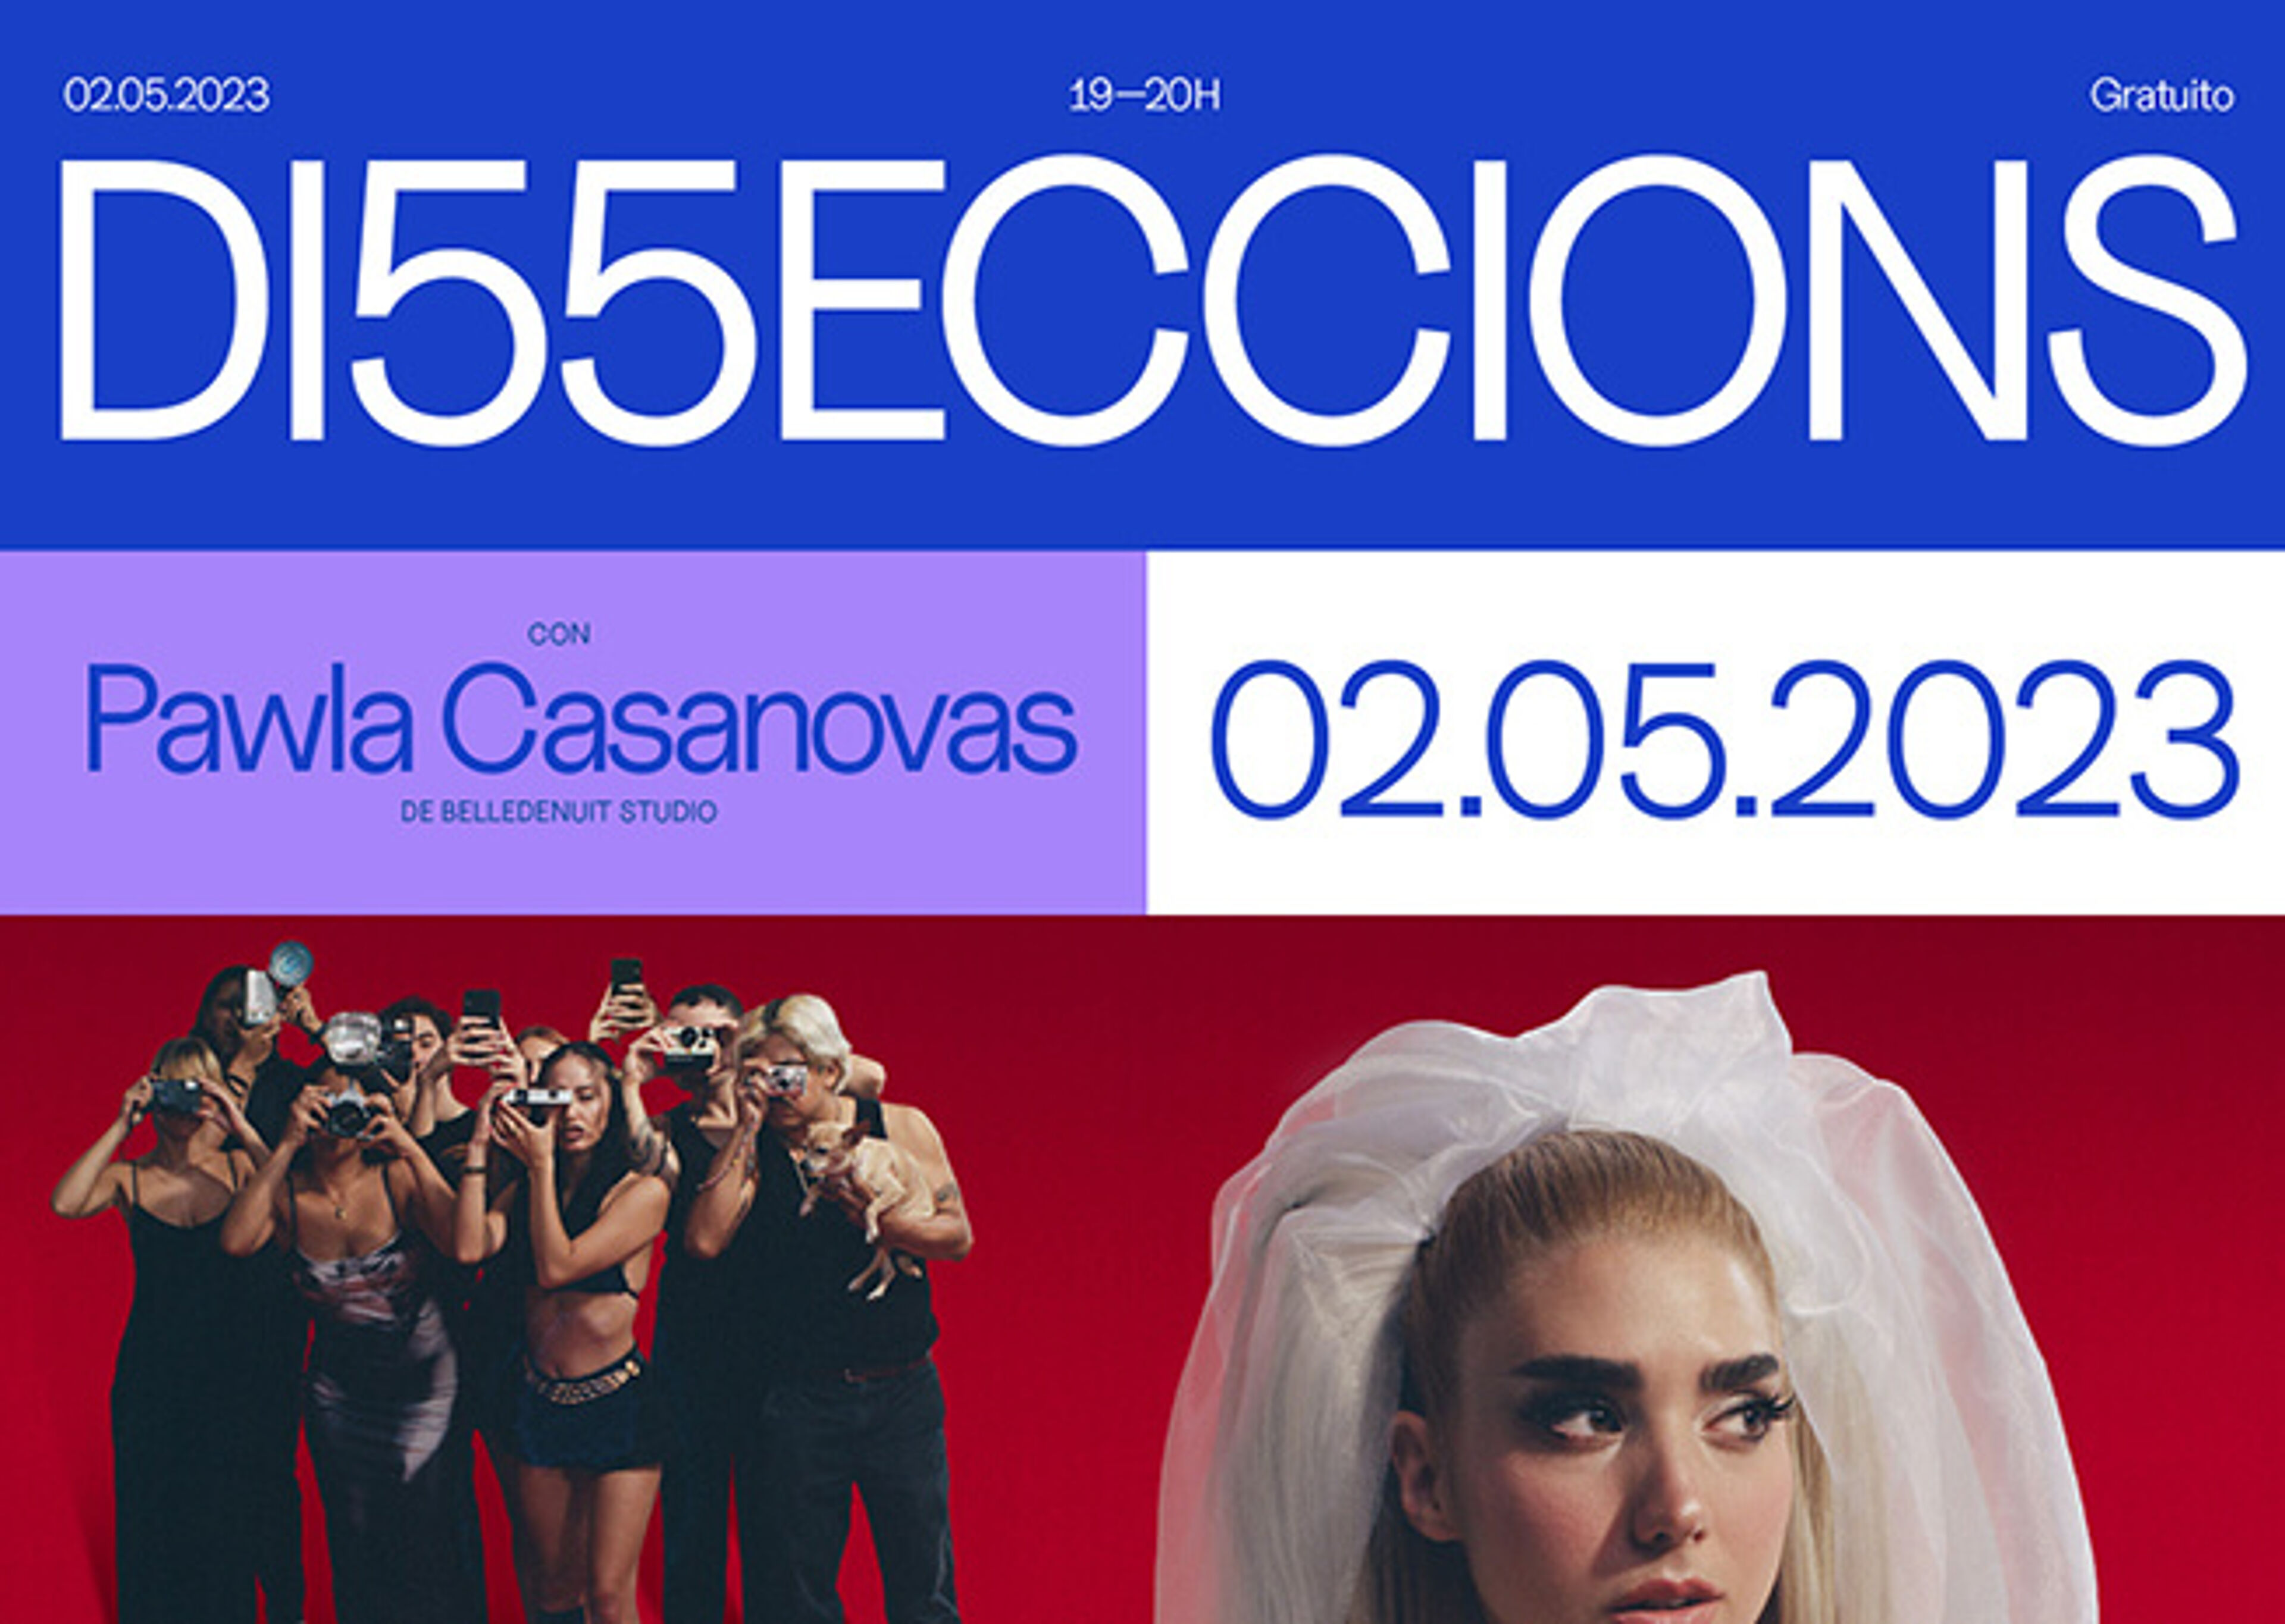 Cartel para la exposición de arte 'D15ECCIONS' el 2 de mayo de 2023, con Pawla Casanovas, un grupo de personas enmascaradas y una novia.